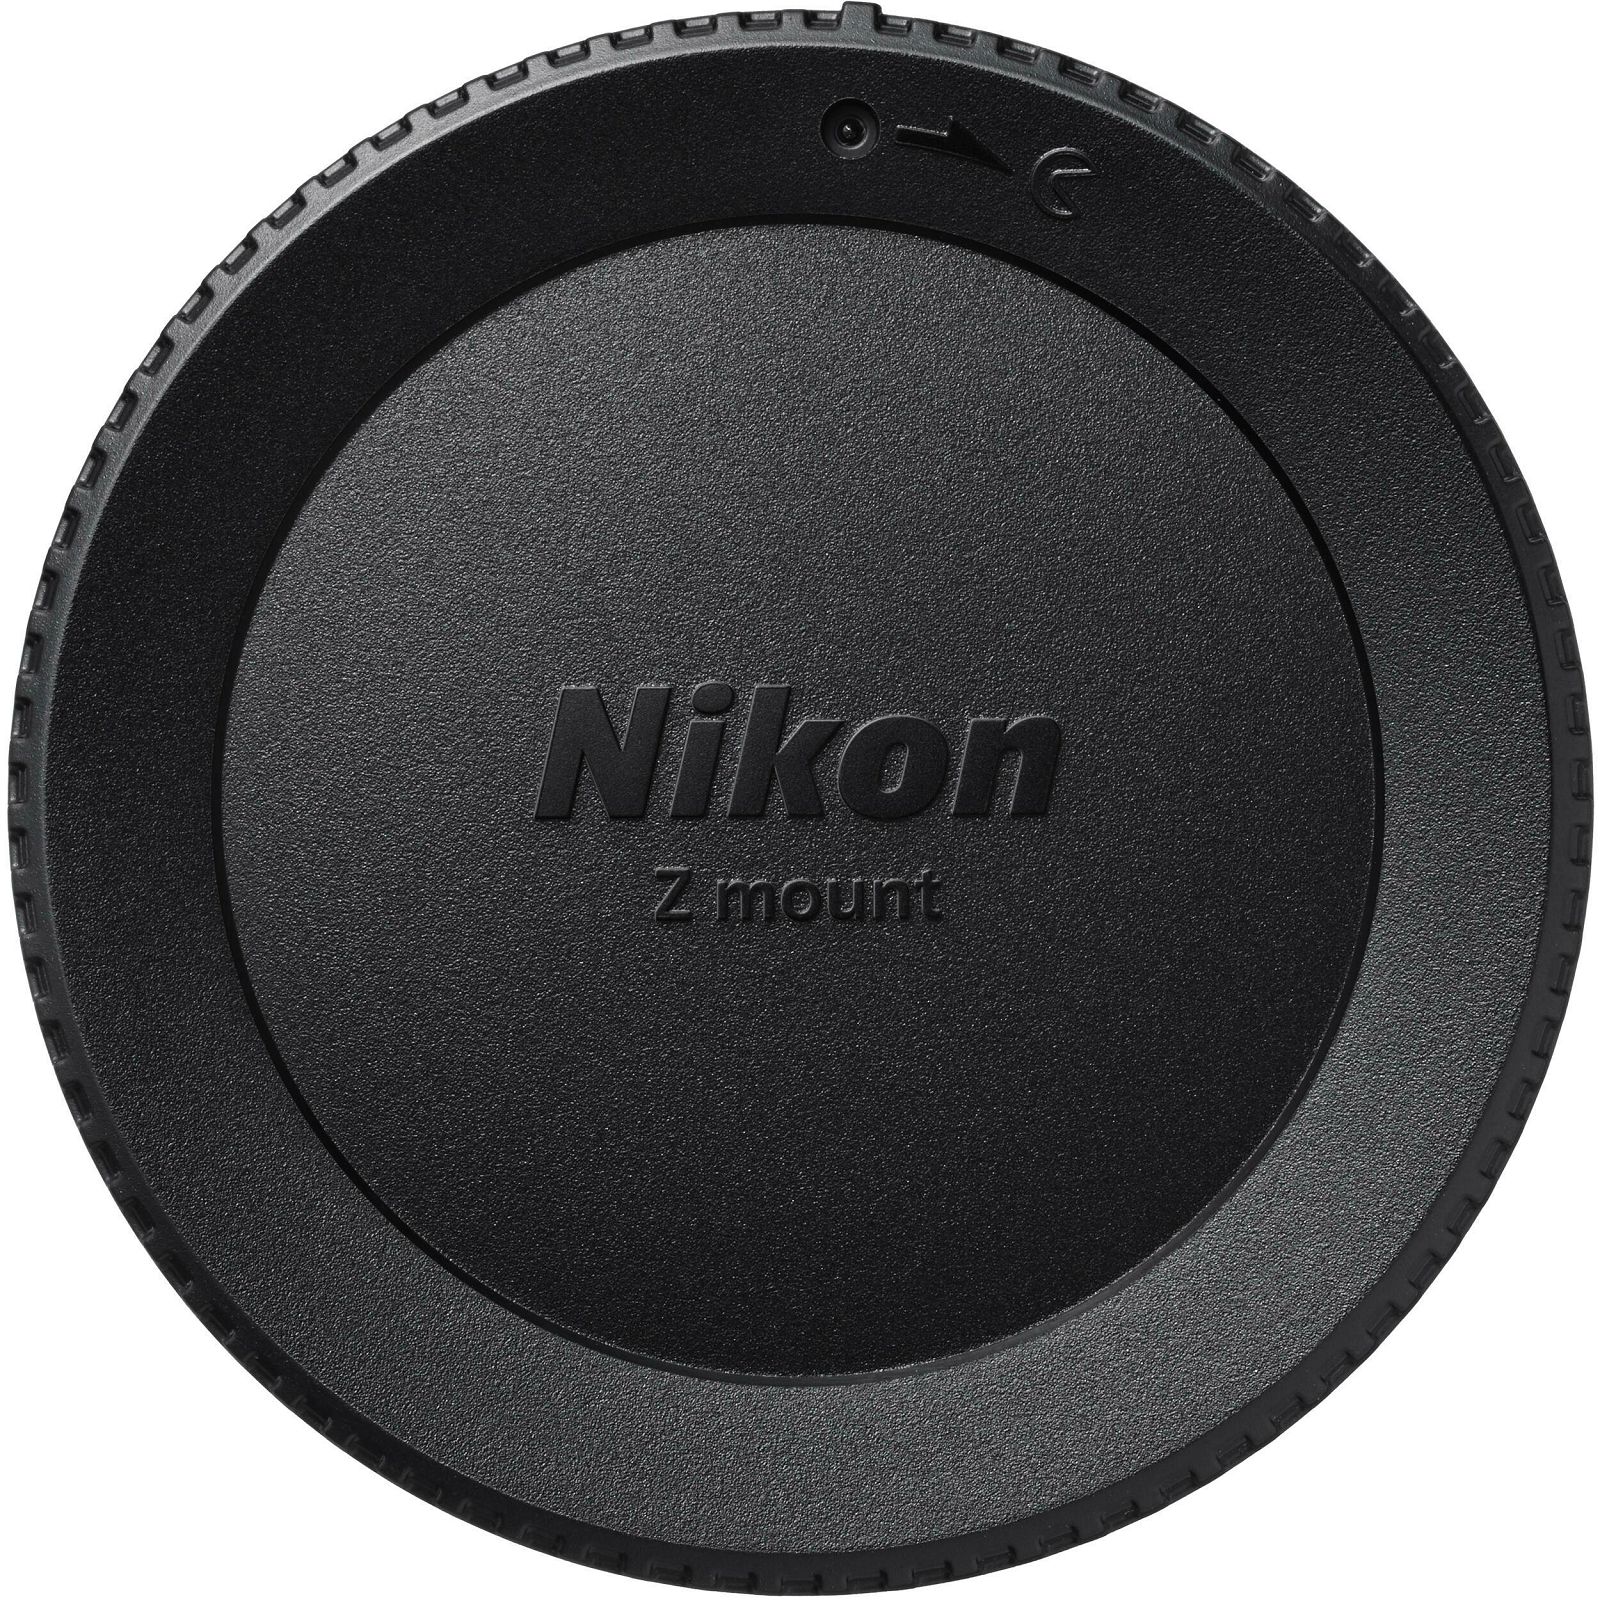 Nikon Z fc + 16-50 f/3.5-6.3 VR (SL) (VOA090K002)